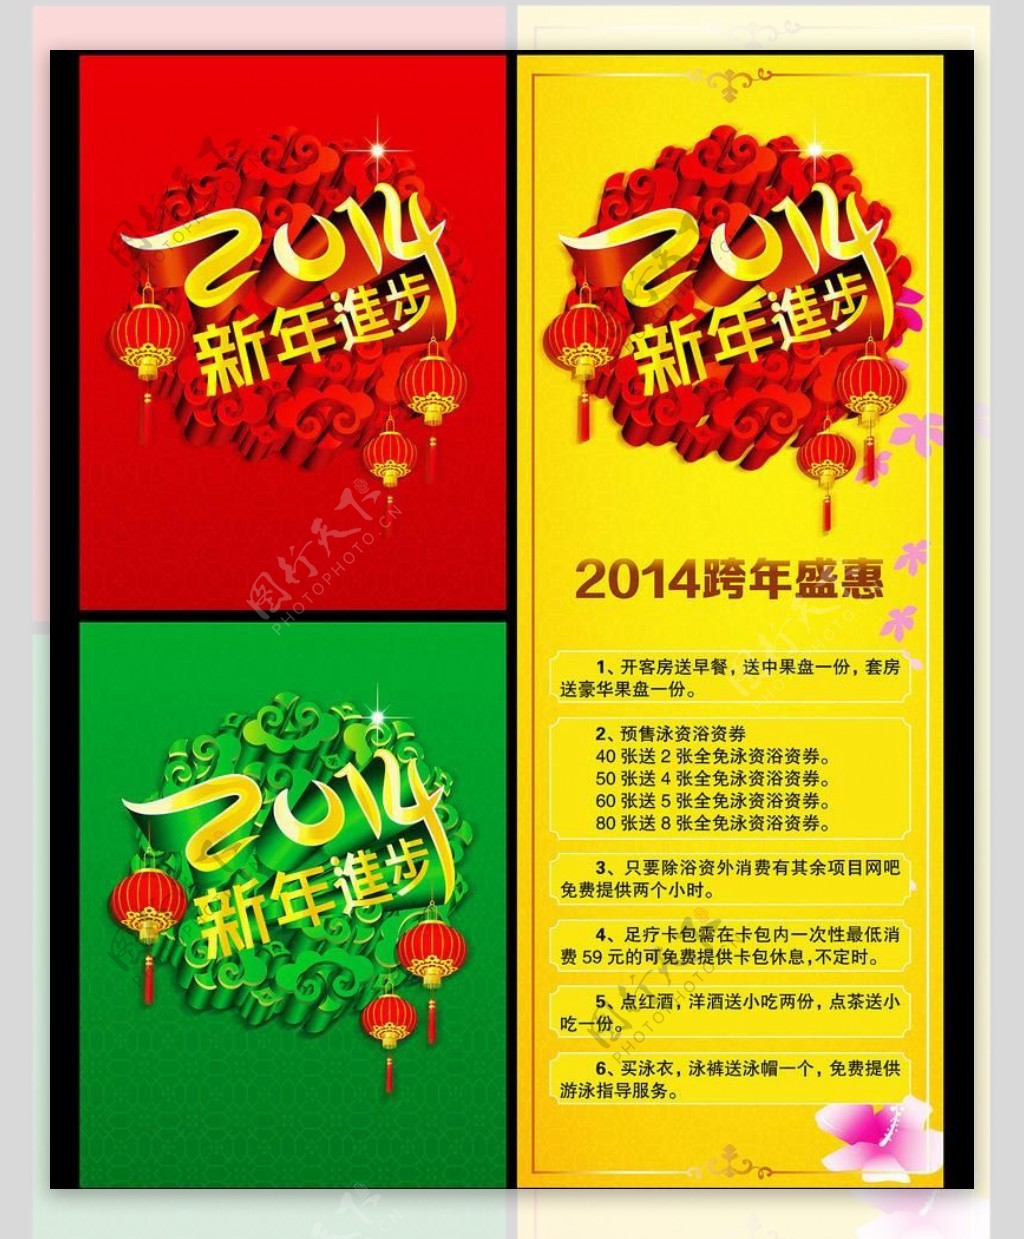 P2014新年进步海报设计PSD素材